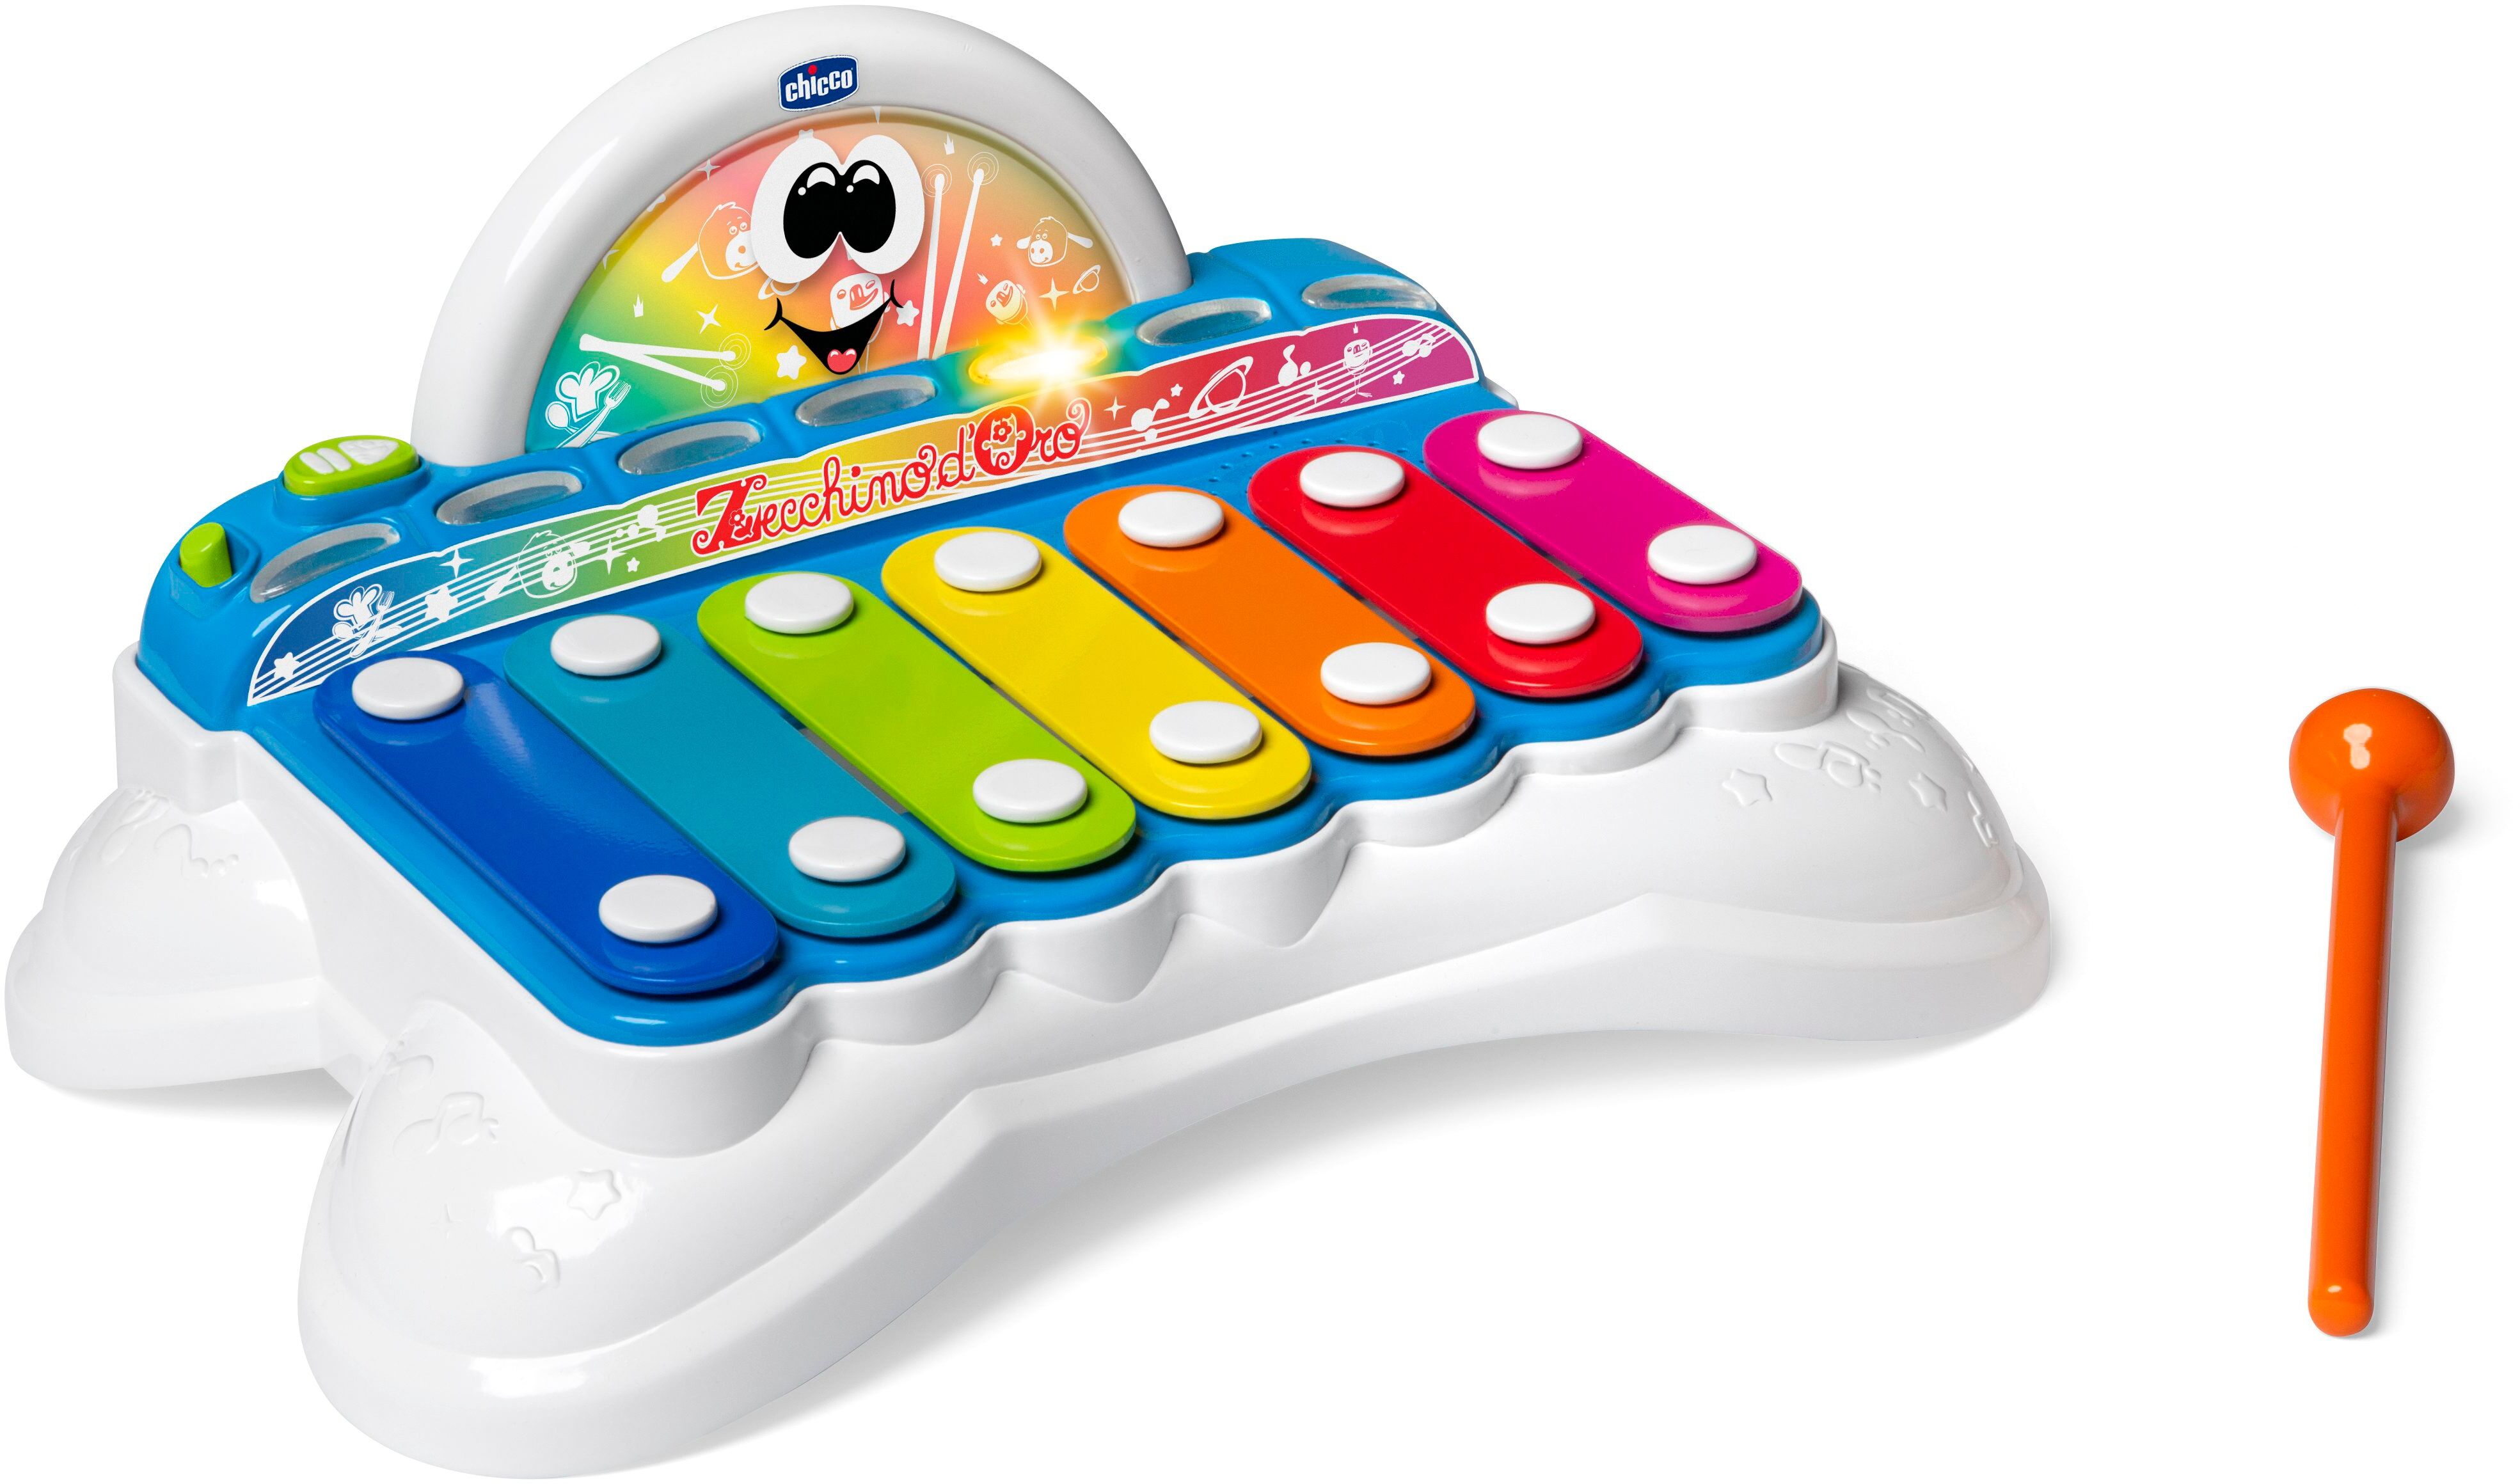 Chicco Spielzeug-Musikinstrument »Flashy das Xylophon«, mit Licht und Sound bunt